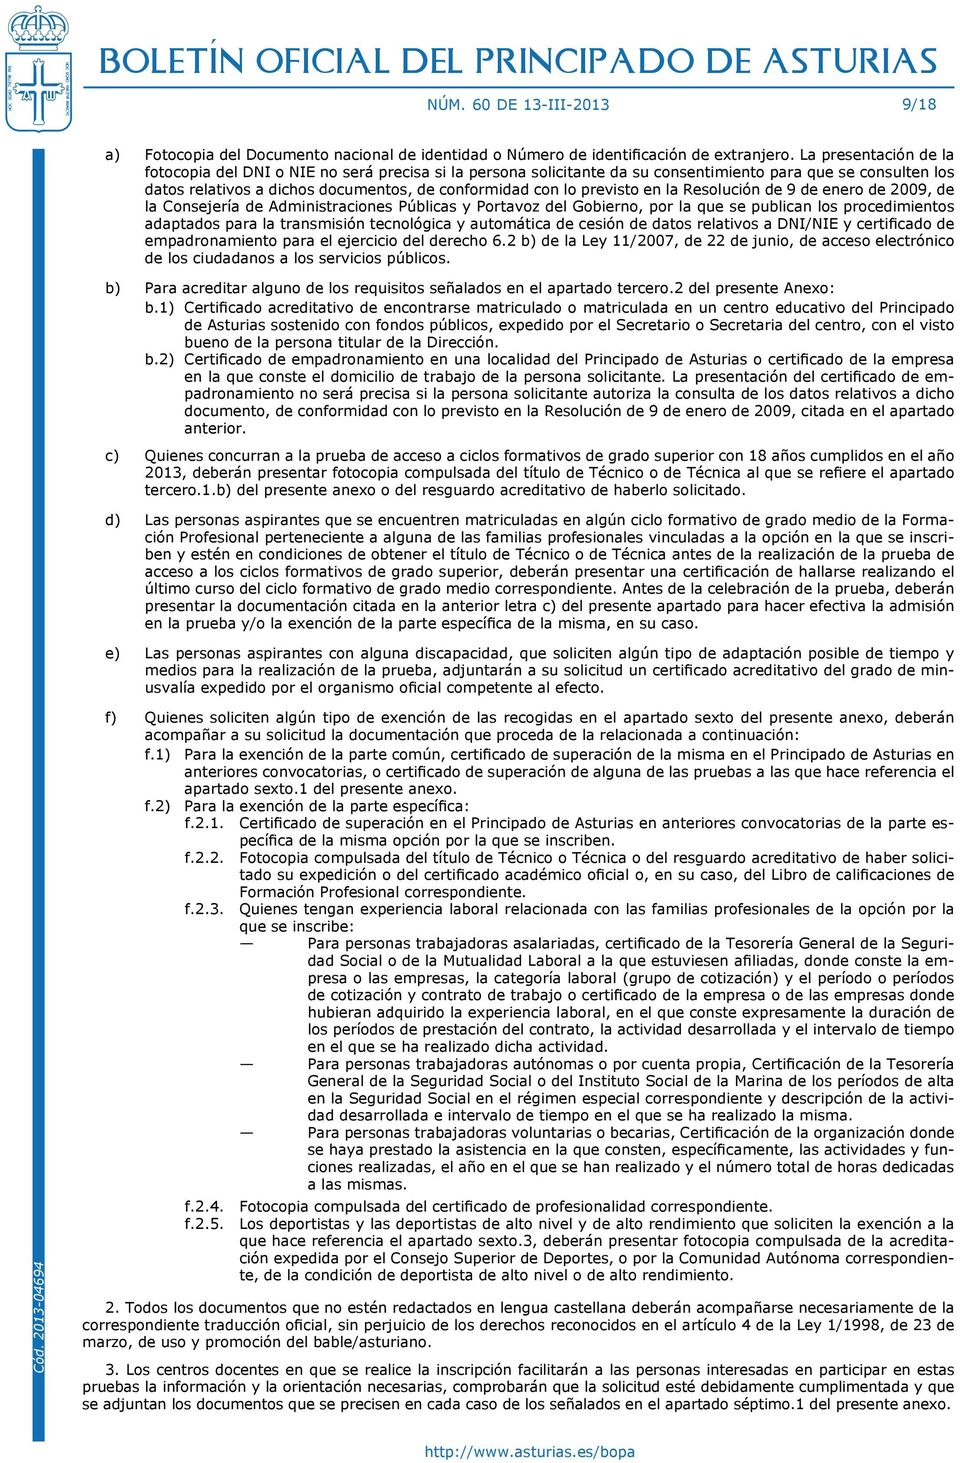 previsto en la Resolución de 9 de enero de 2009, de la Consejería de Administraciones Públicas y Portavoz del Gobierno, por la que se publican los procedimientos adaptados para la transmisión